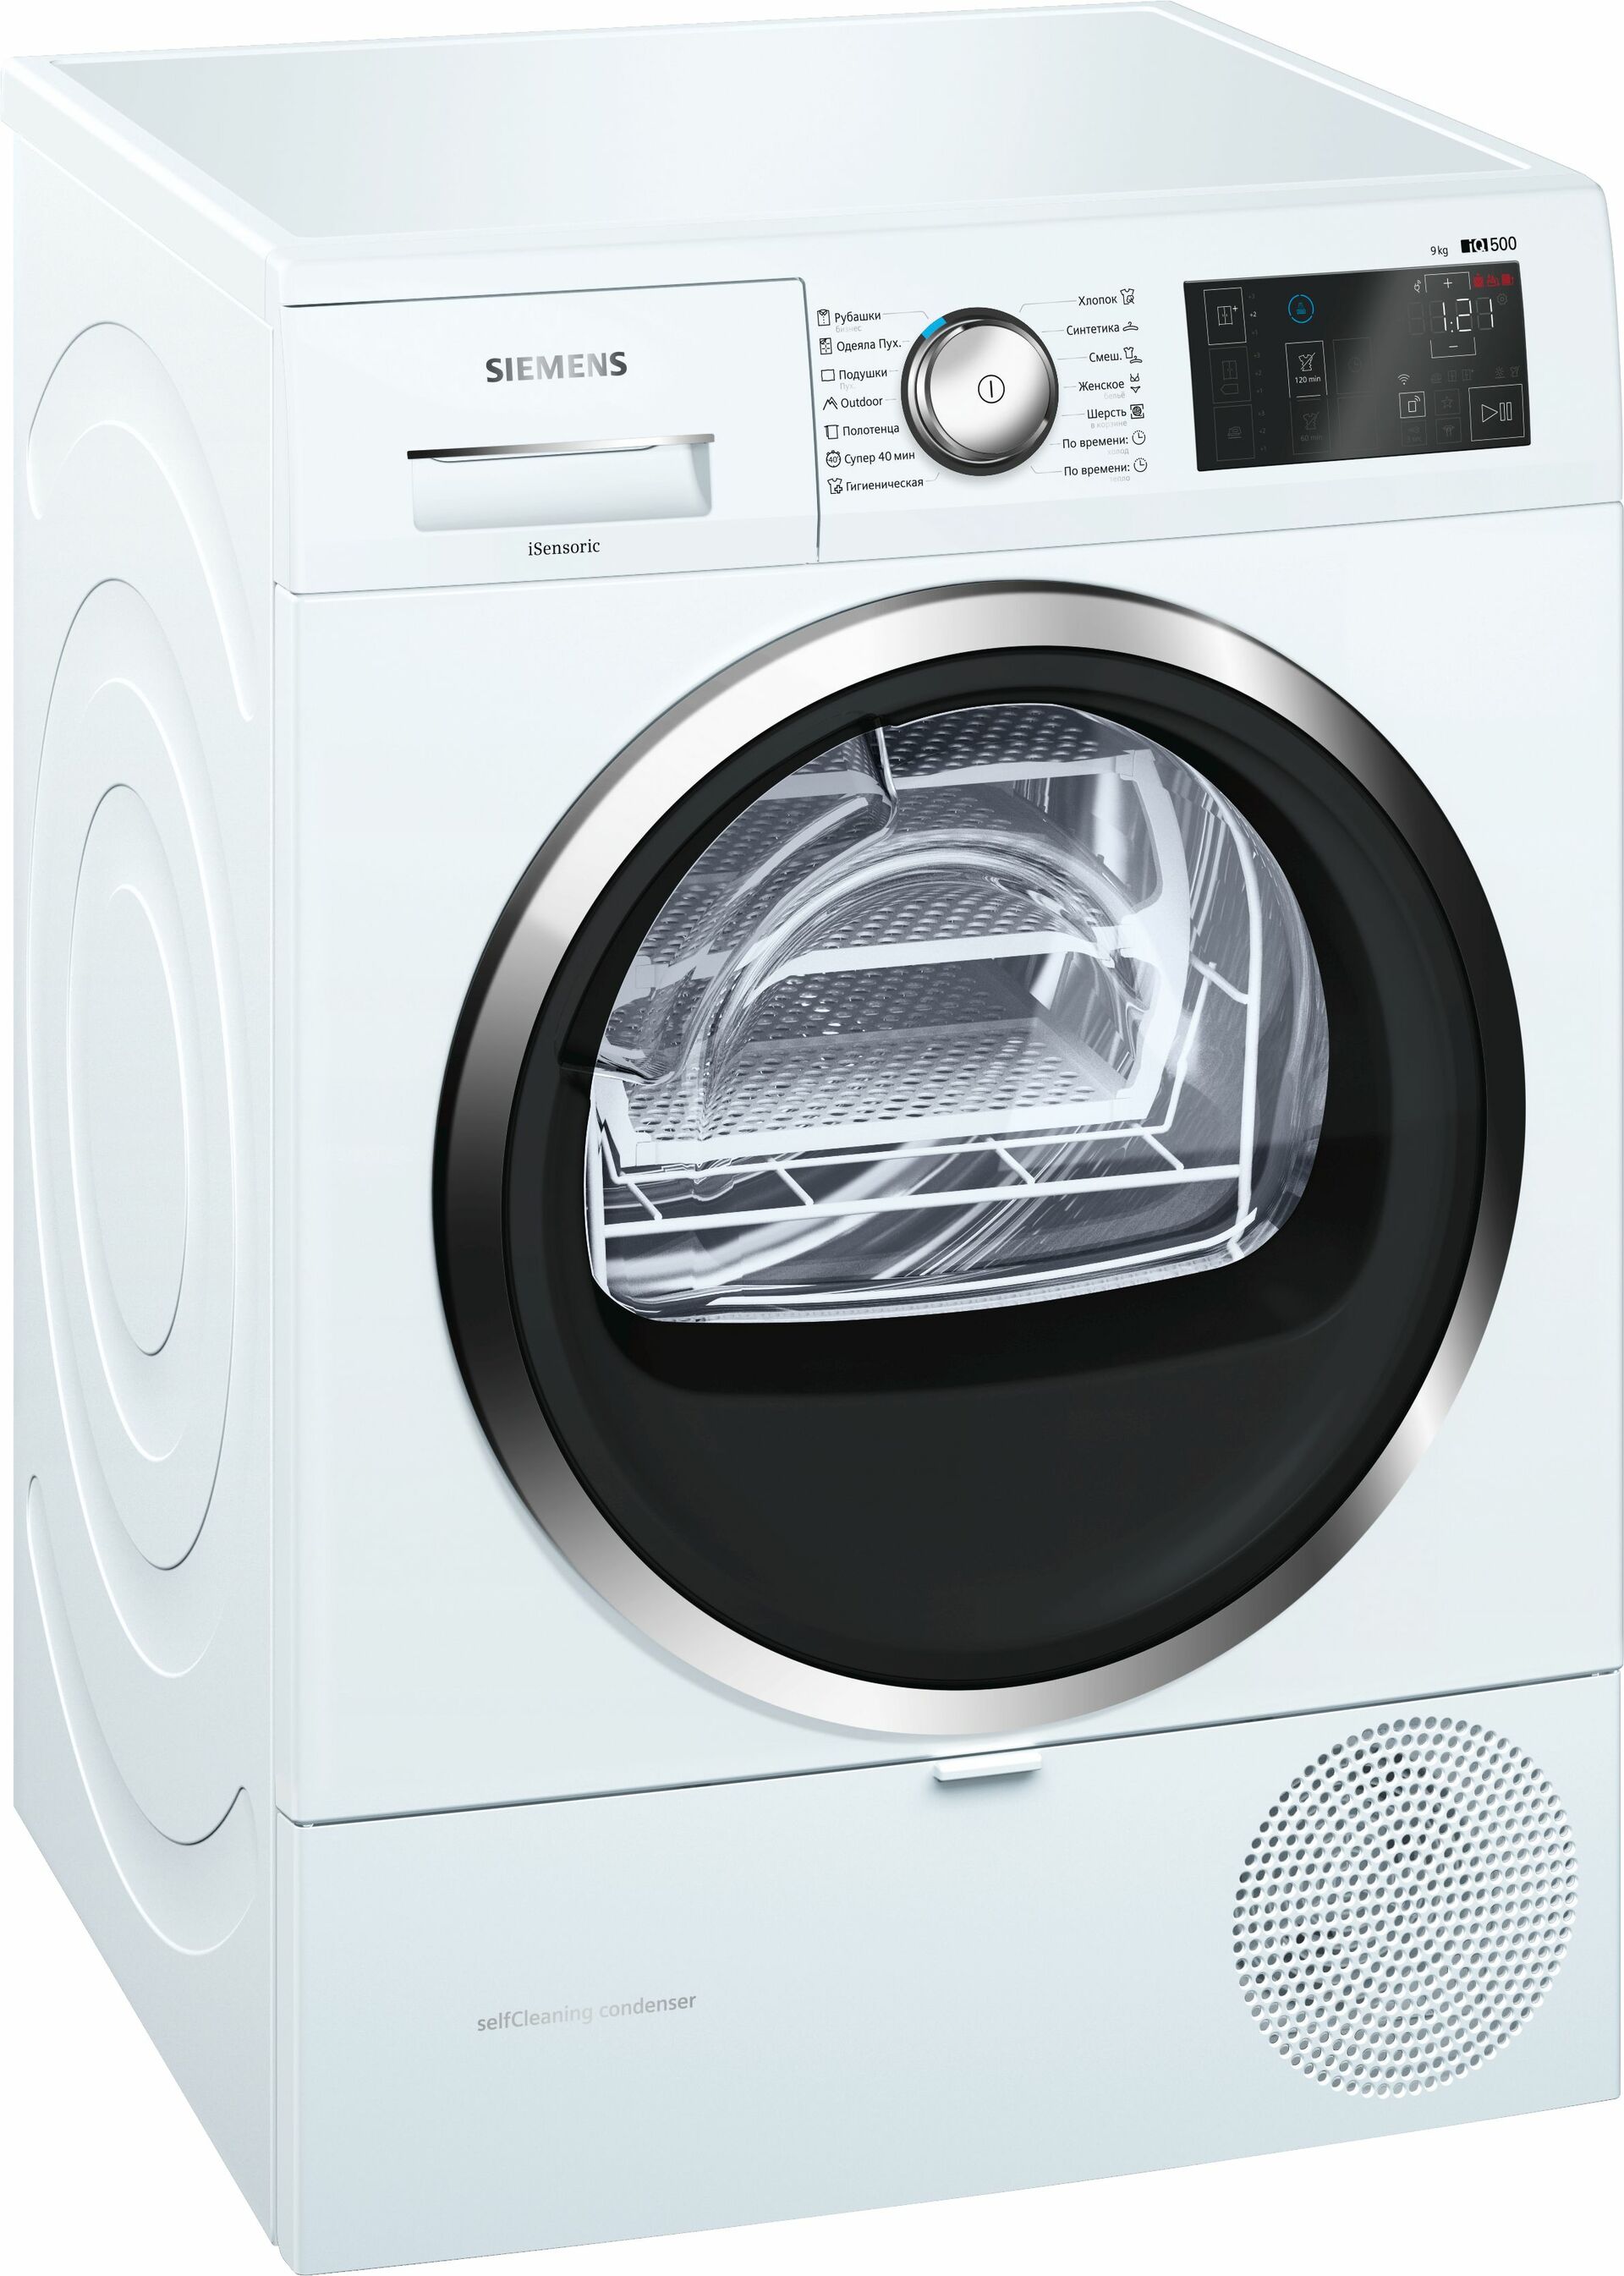 Тюмень стиральные машины автомат